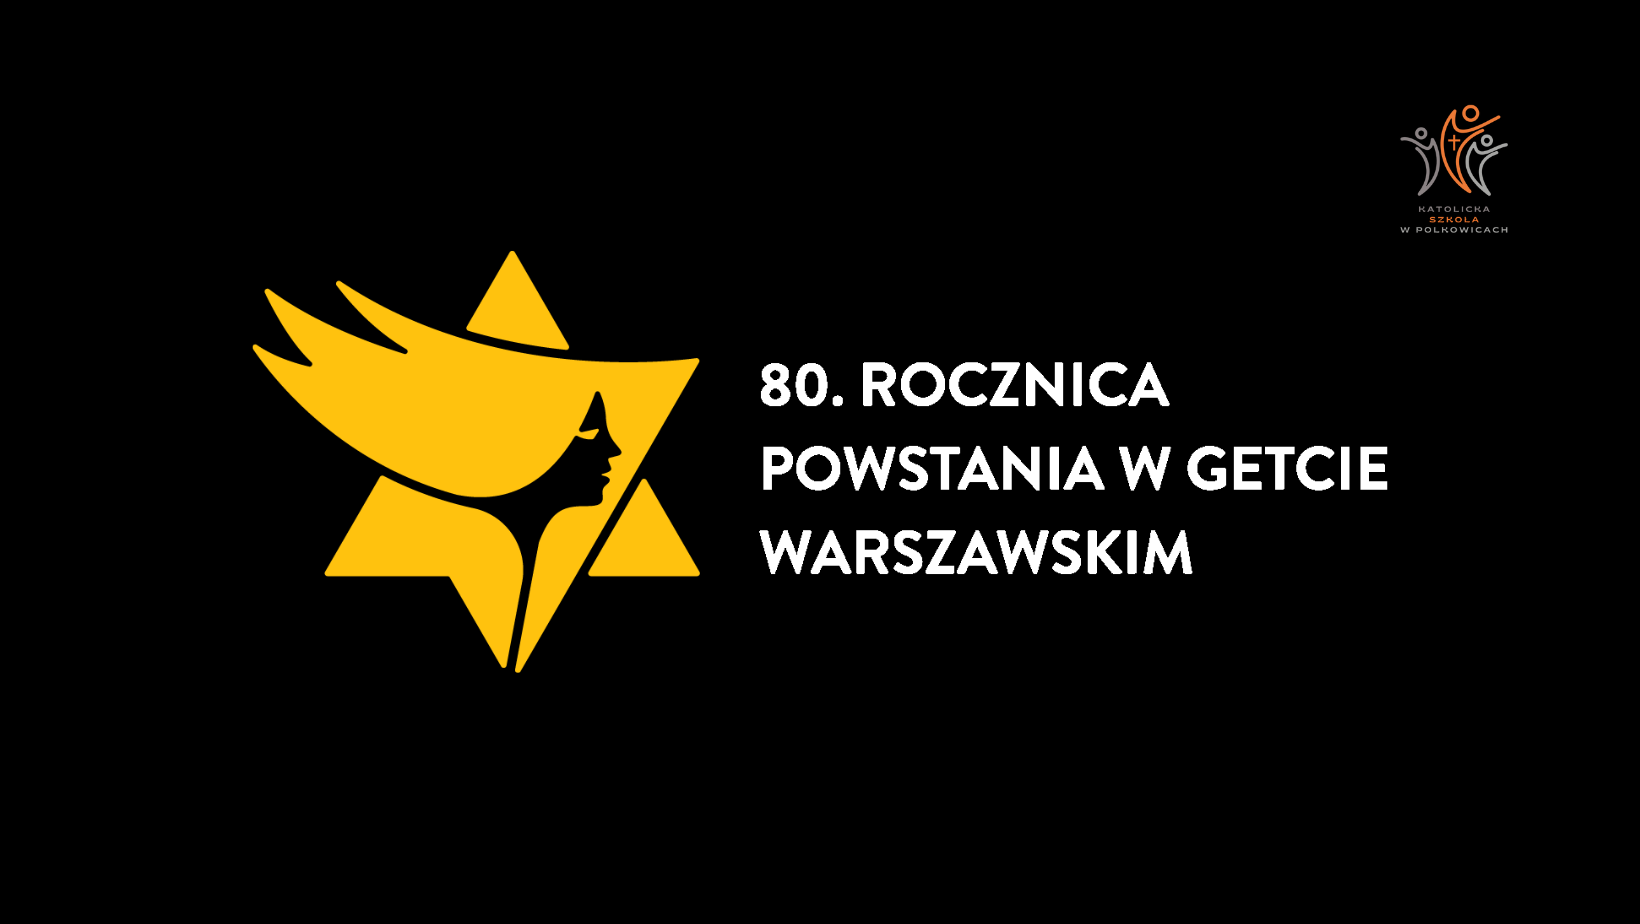 You are currently viewing 80. Rocznica powstania w getcie warszawskim